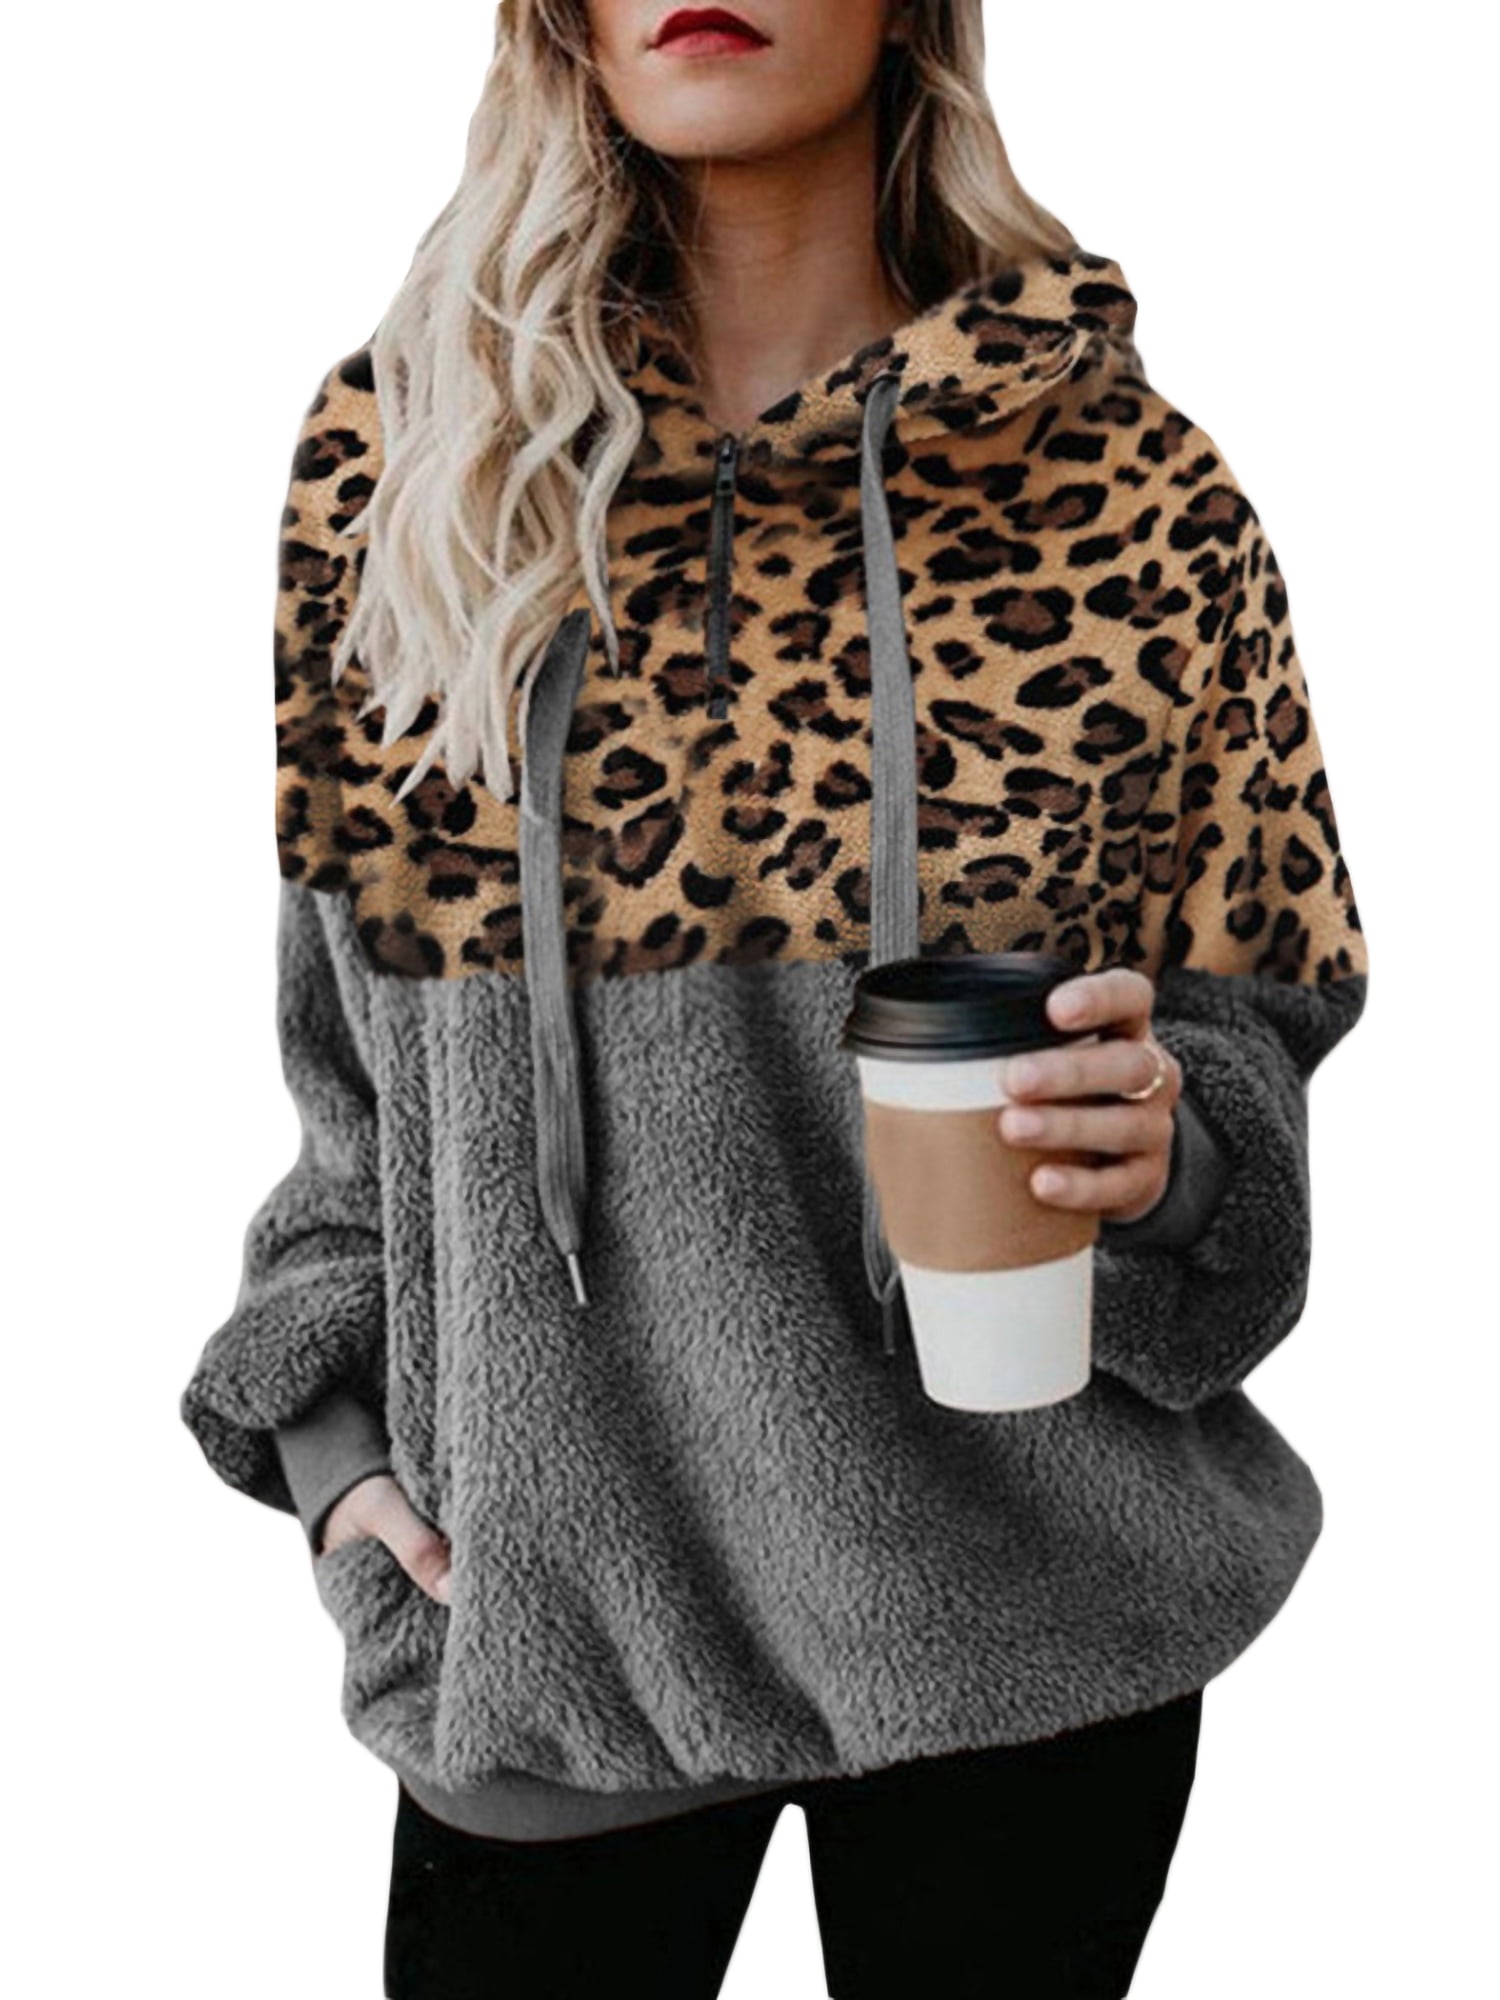 POTO Hoodies for Women Leopard Patchwork Fuzzy Fleece Hooded Drawstring Sweatshirts 1/4 Zip up Oversized Sweaters Coats 